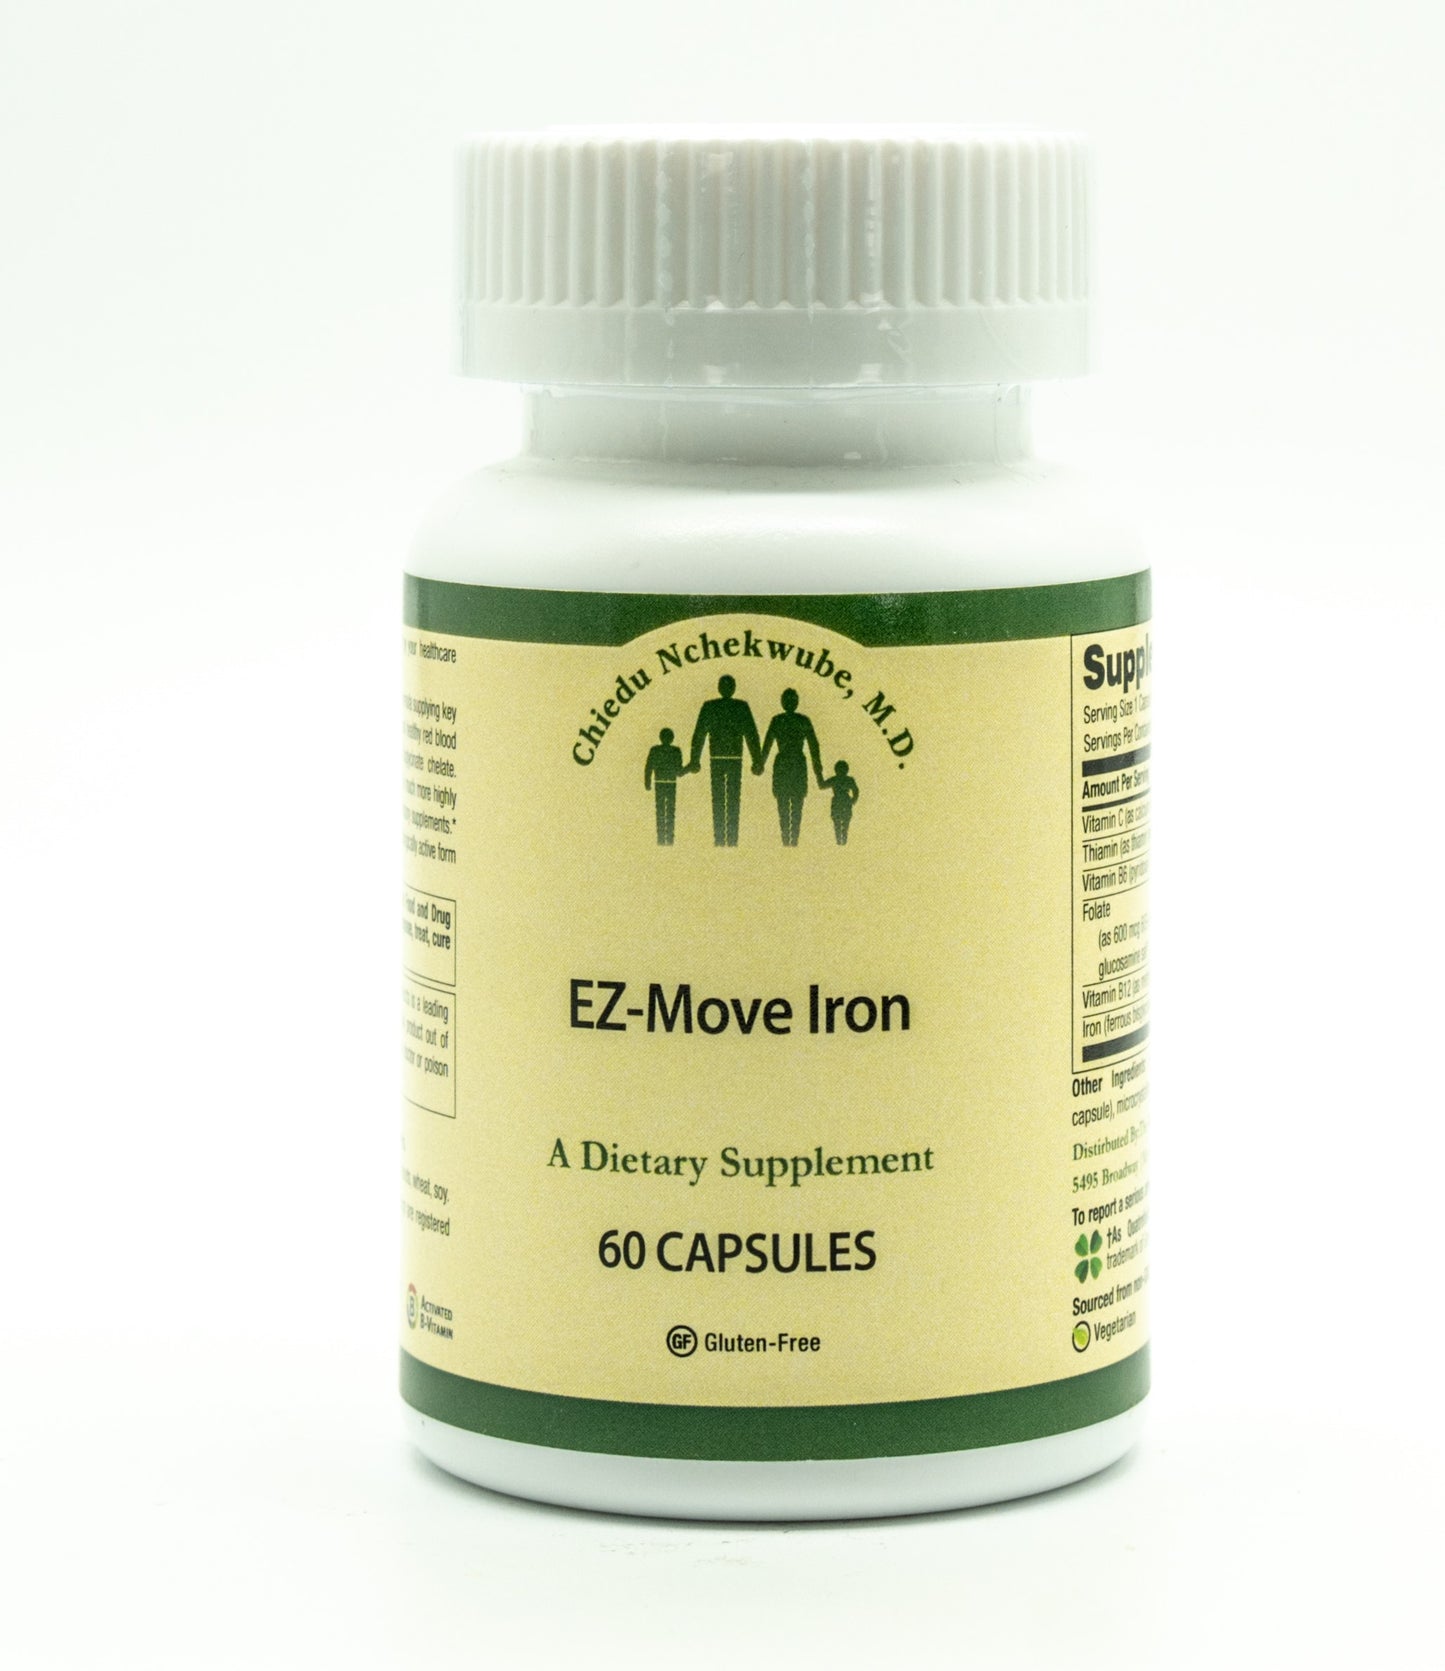 EZ-Move Iron